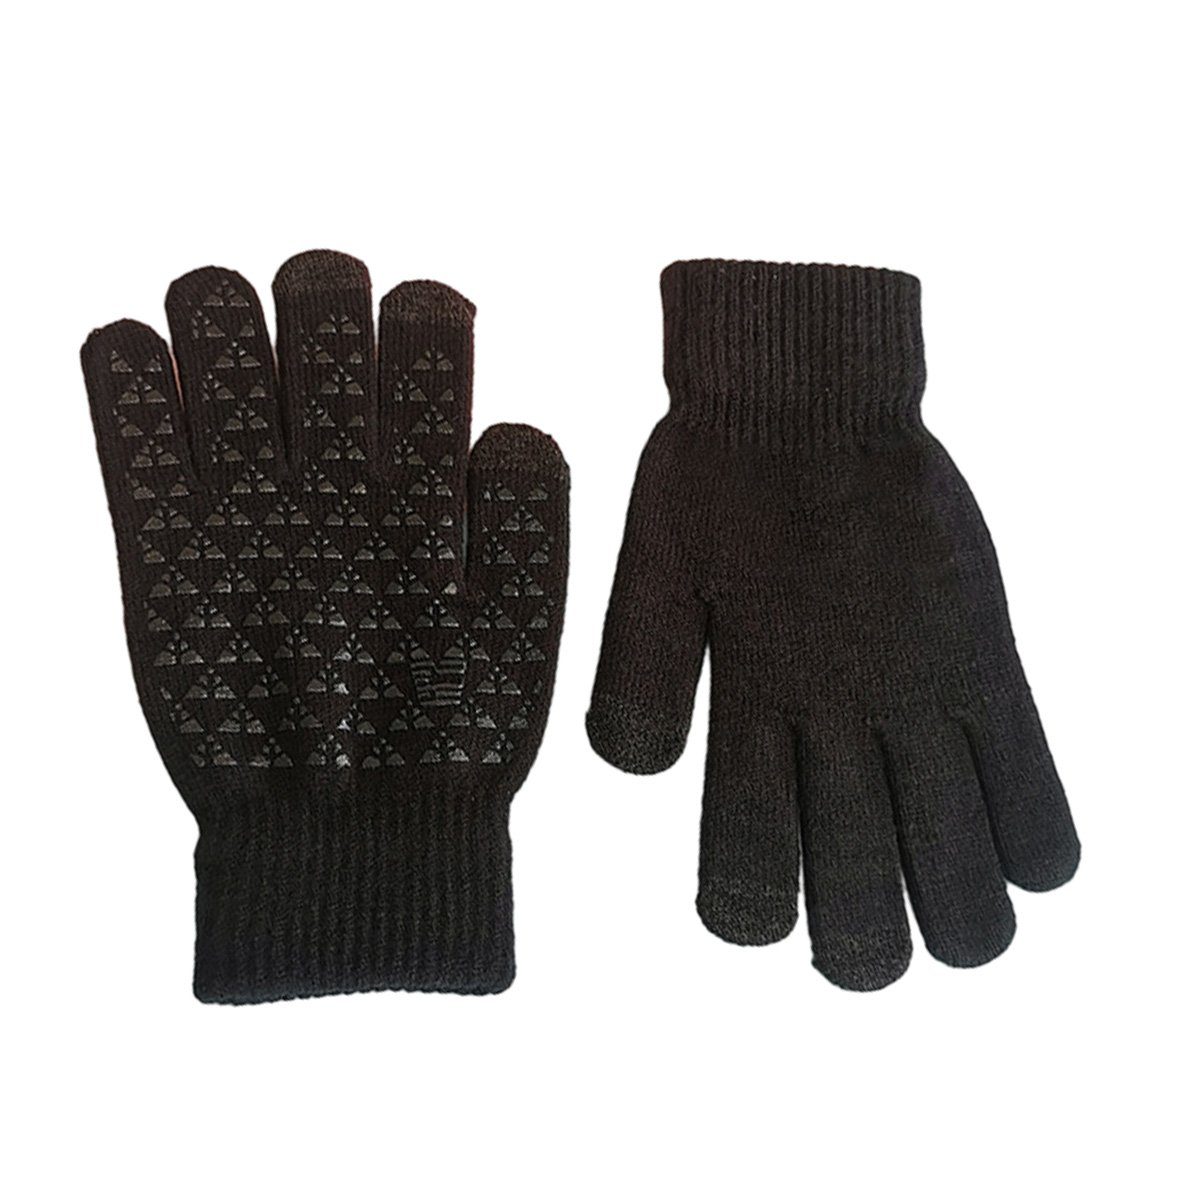 JedBesetzt Strickhandschuhe Winterhandschuhe Touchscreen Strick Schwarz Handschuhe Fingerhandschuhe